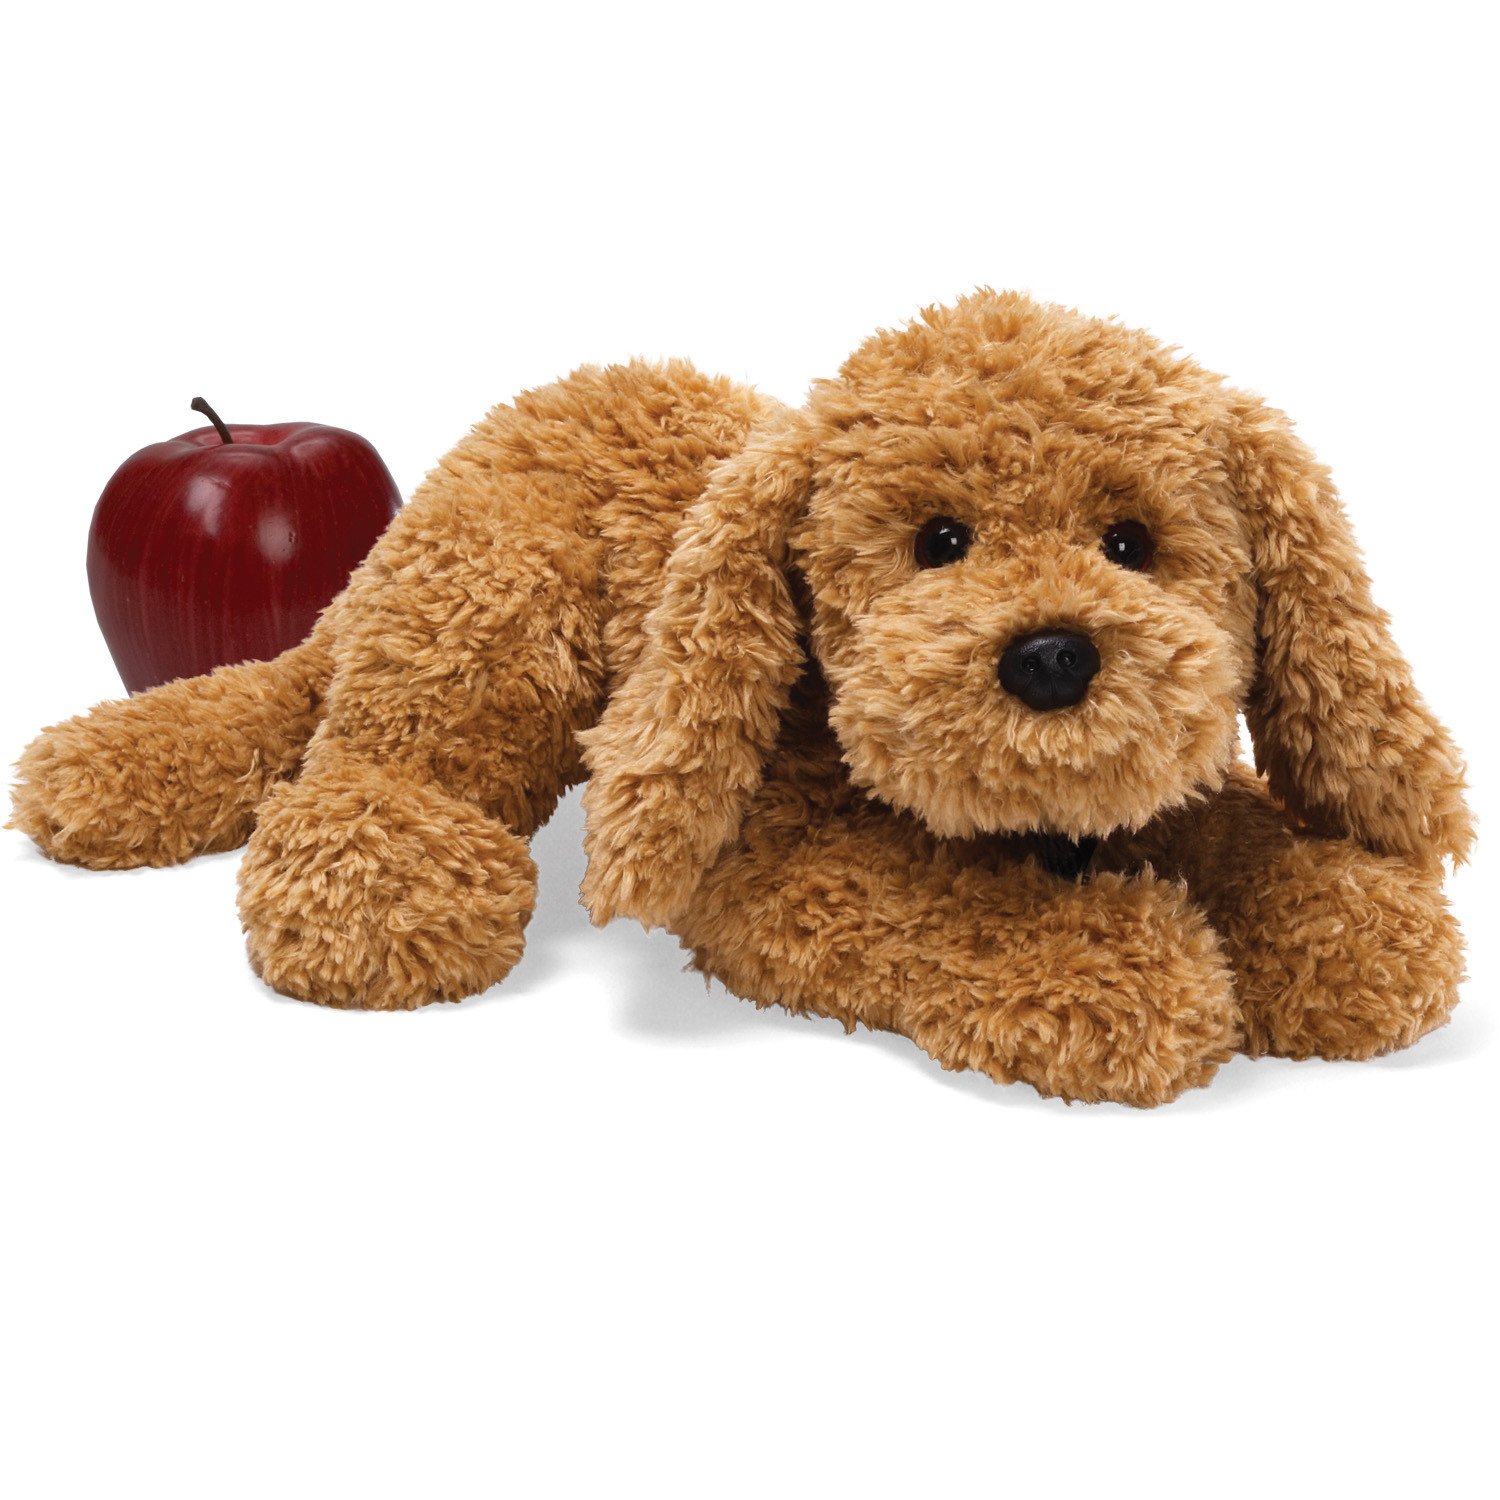 Stuffed dog photo